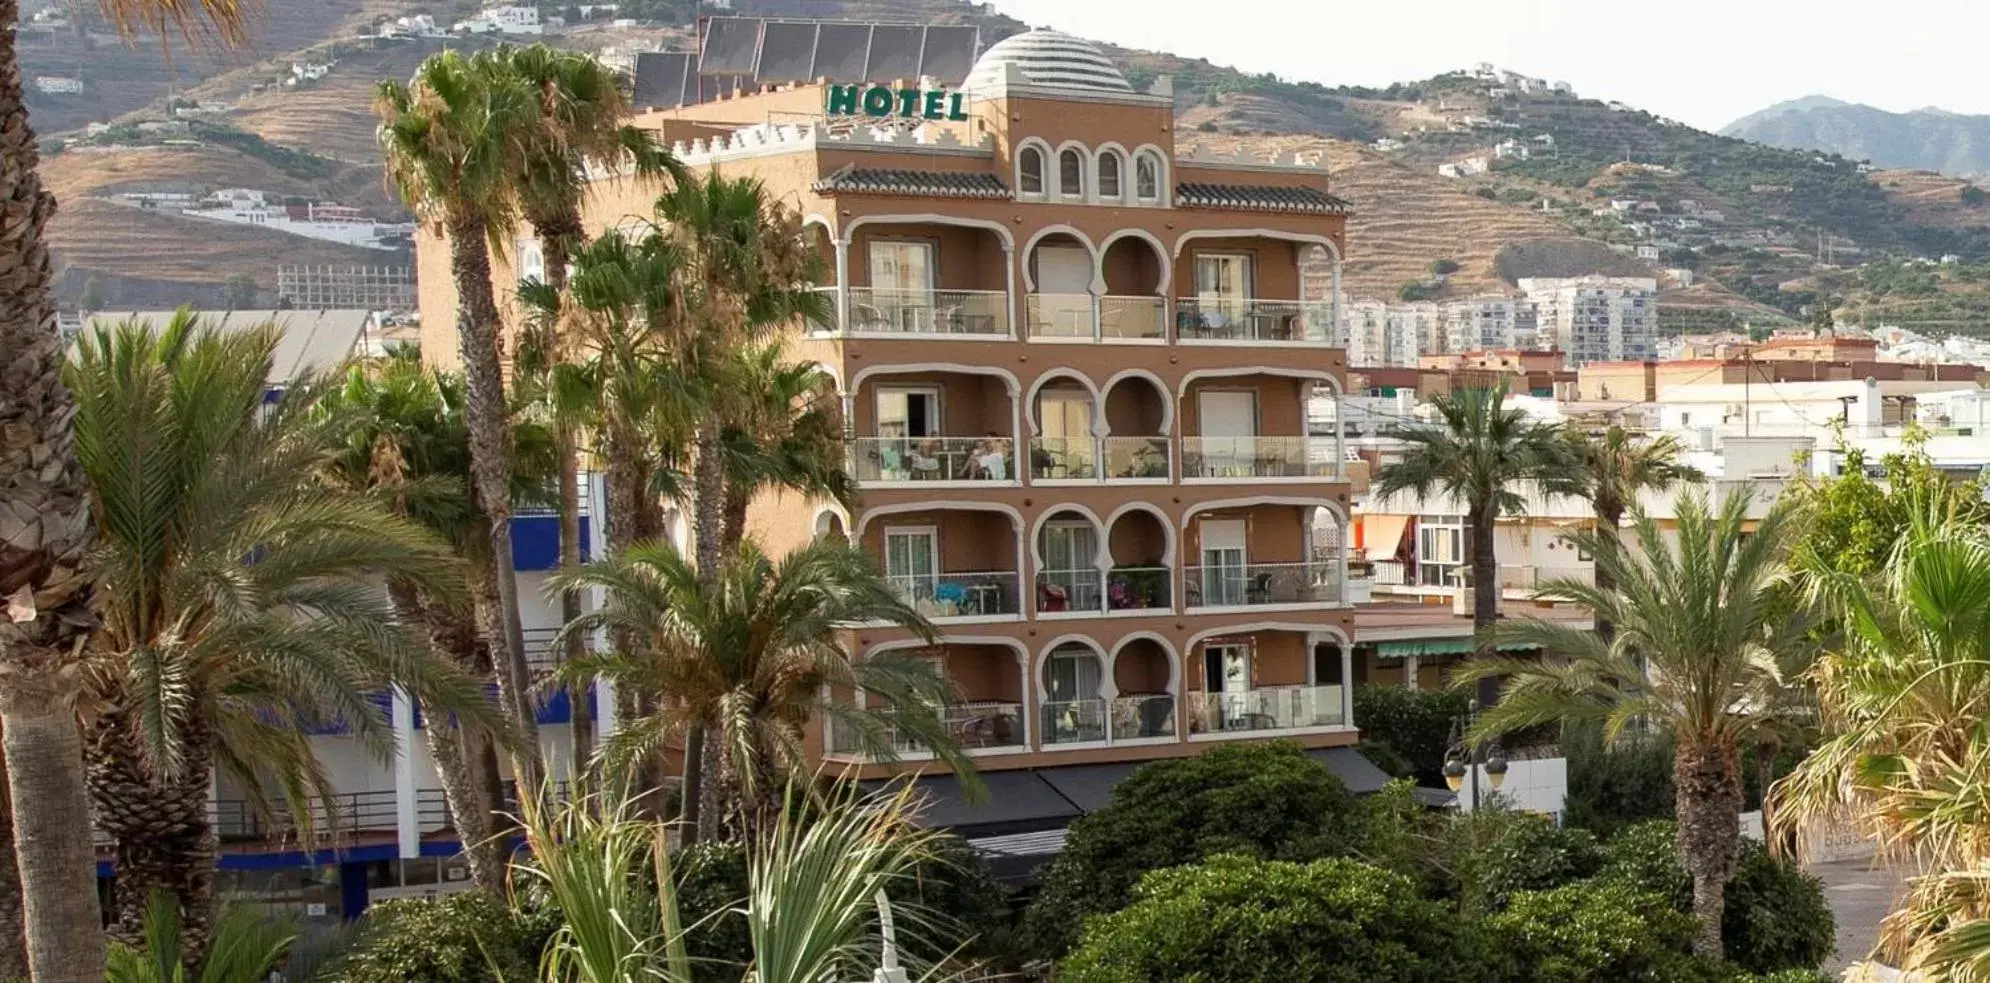 Property Building in Hotel Casablanca